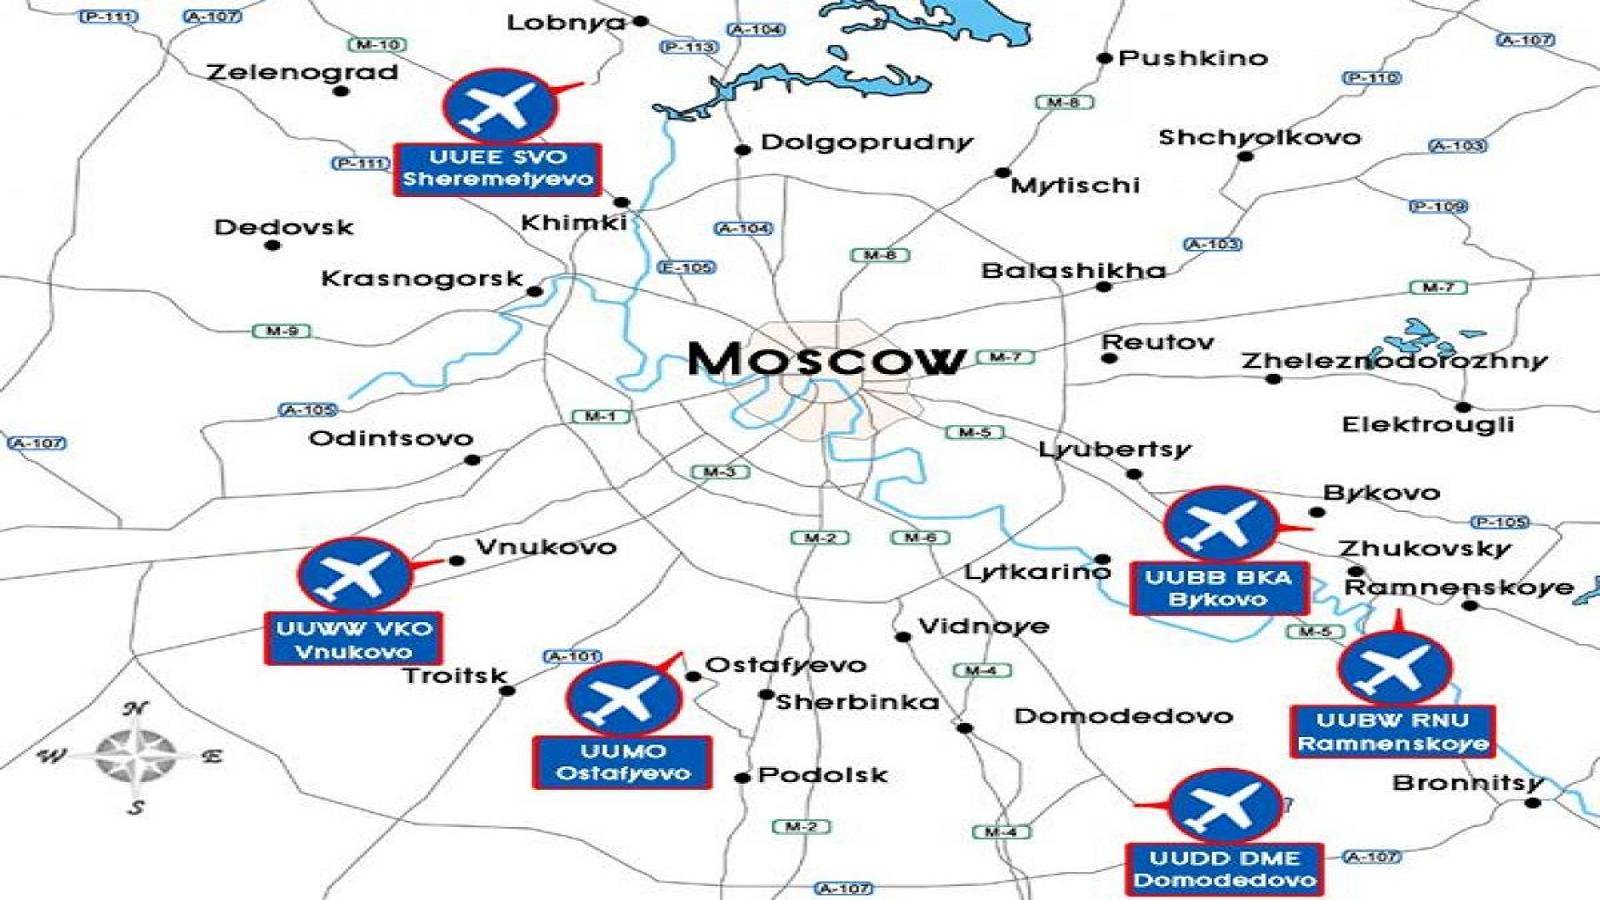 Аэропорты москвы на карте города, московской области. список, расположение метро